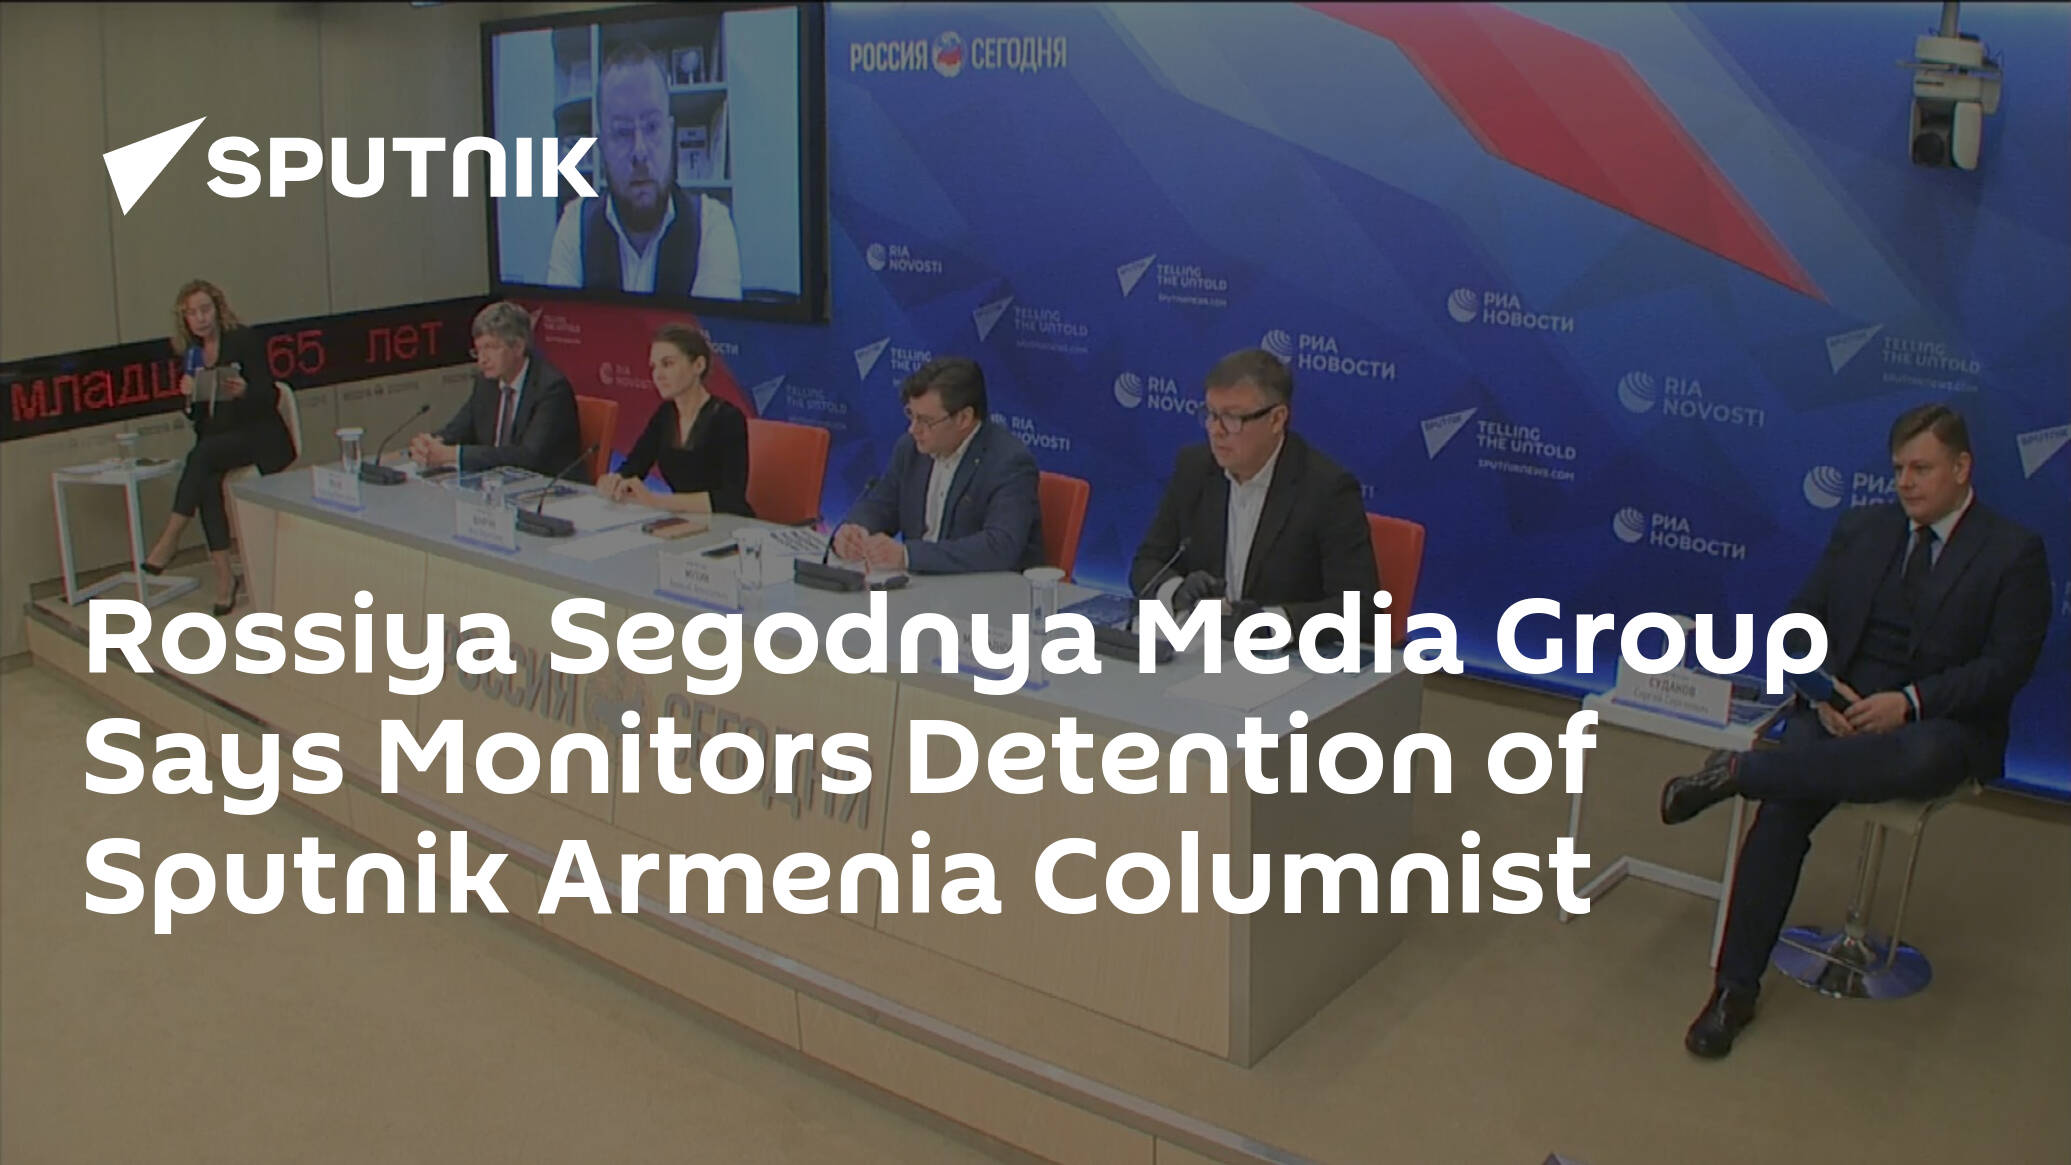 Rossiya Segodnya Media Group Says Monitors Detention of Sputnik Armenia Columnist